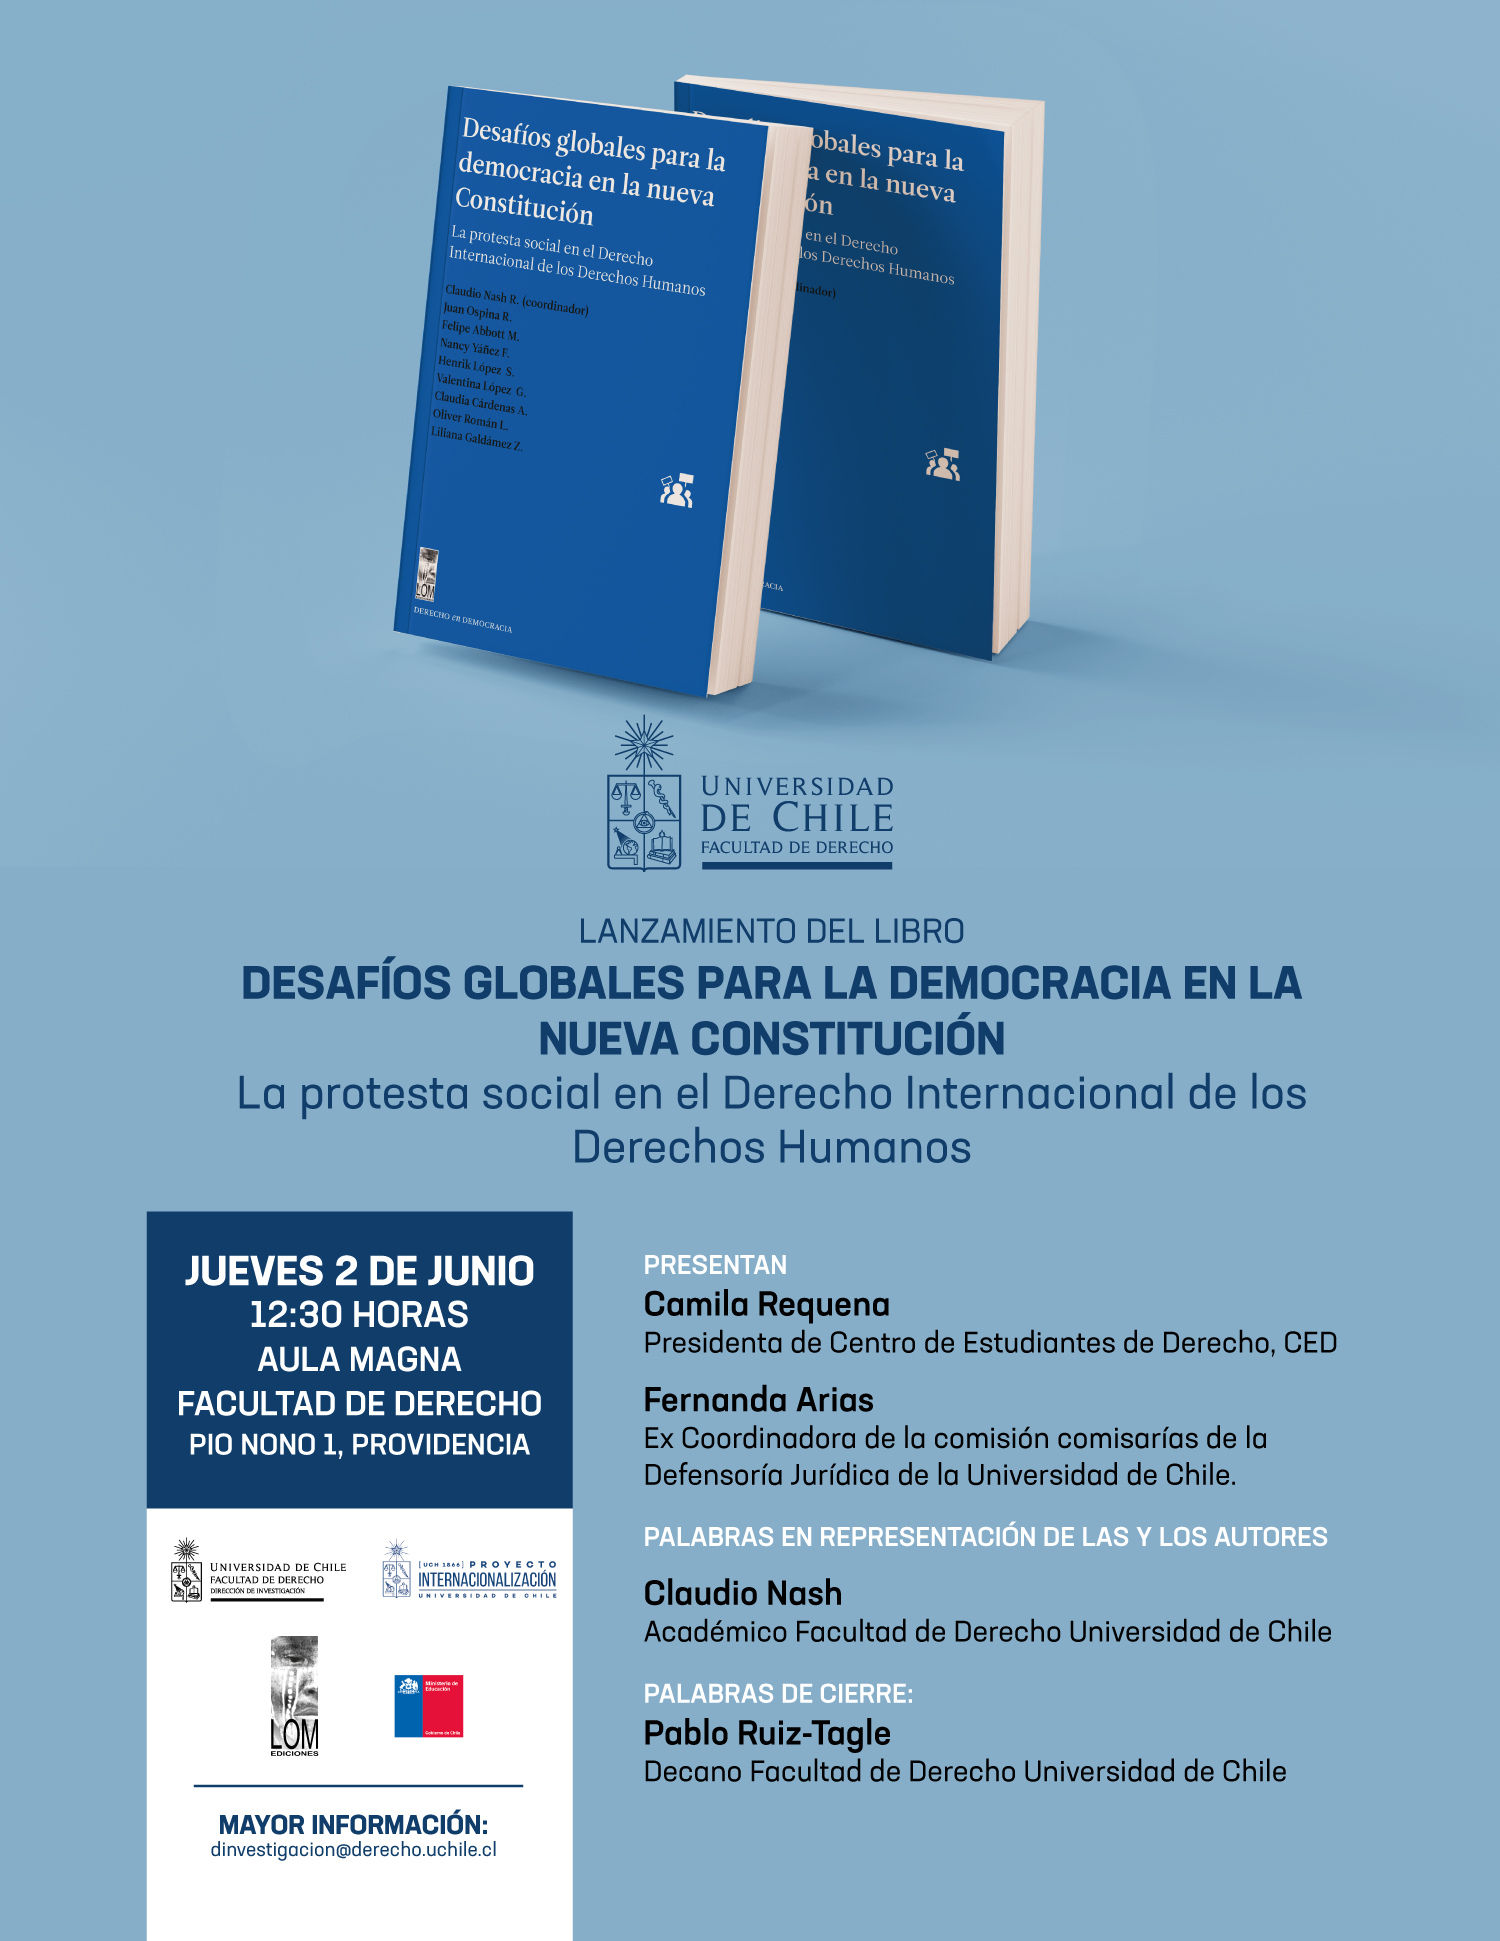 Universidad de Chile invita al Lanzamiento del libro "Desafíos globales para la democracia en la Nueva Constitución"